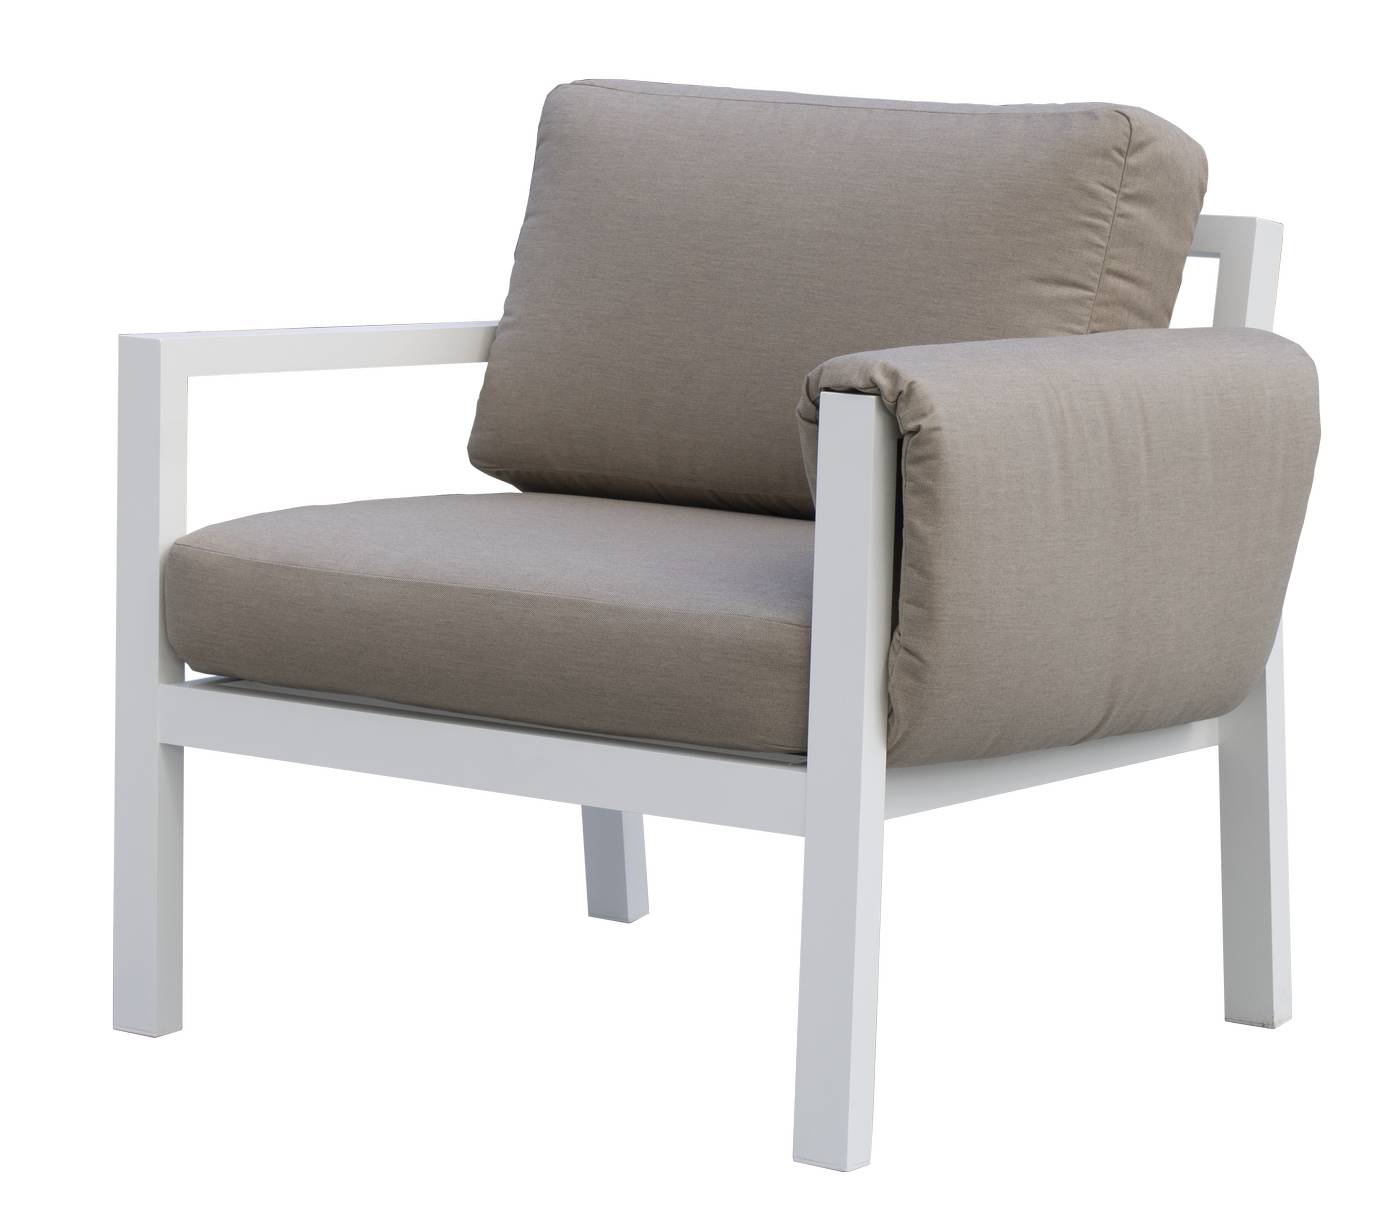 Set Sofá/Cama Arizona-38 - Conjunto aluminio con opción de cojines en los brazos: sofá/cama de 3 plazas + 2 sillones + 1 mesa de centro. Color: blanco, antracita, marrón, champagne o plata.